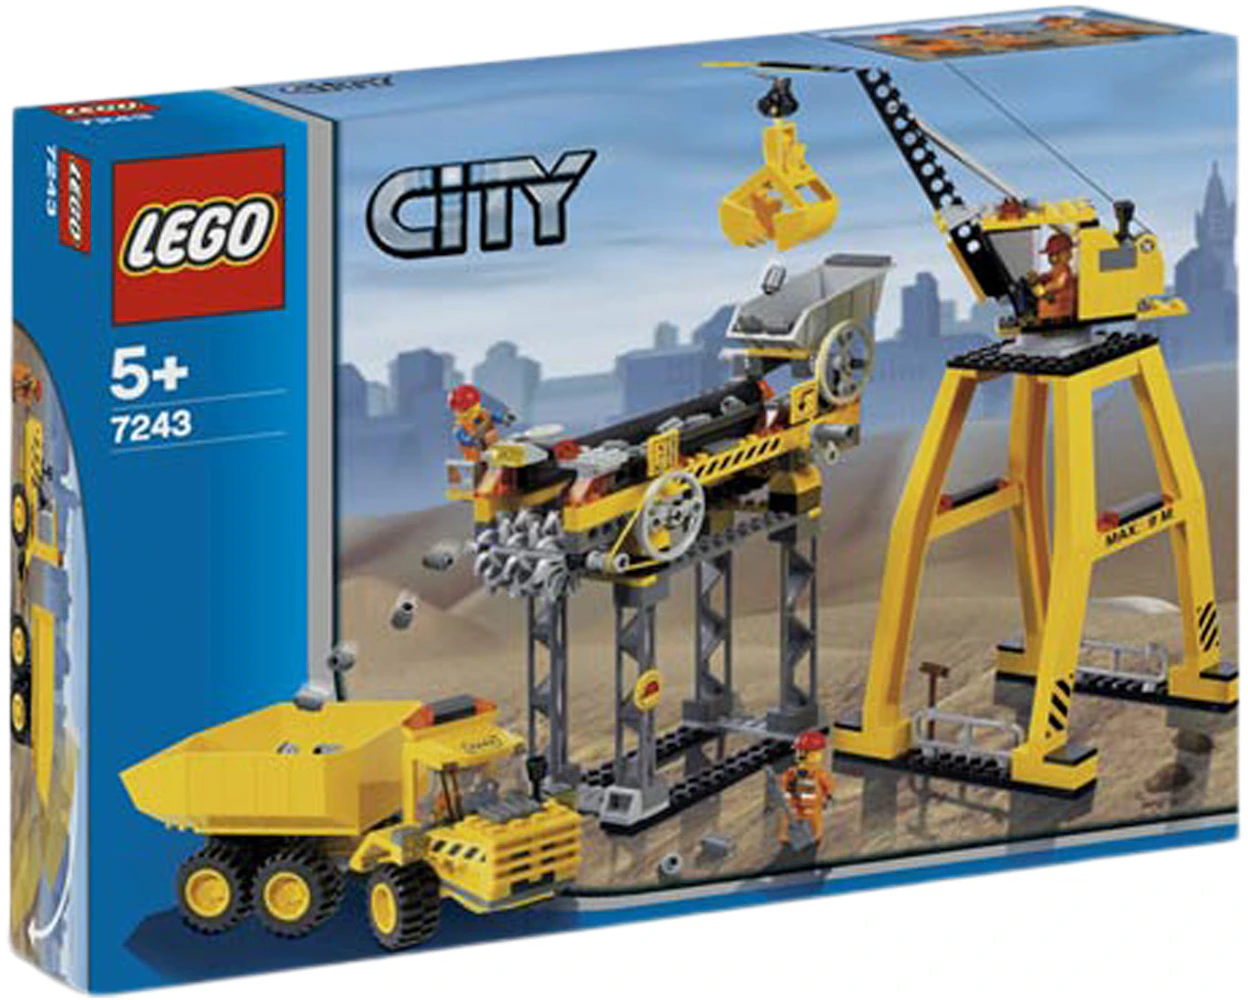 Døde i verden kantsten Efternavn LEGO City Construction Site Set 7243 - US